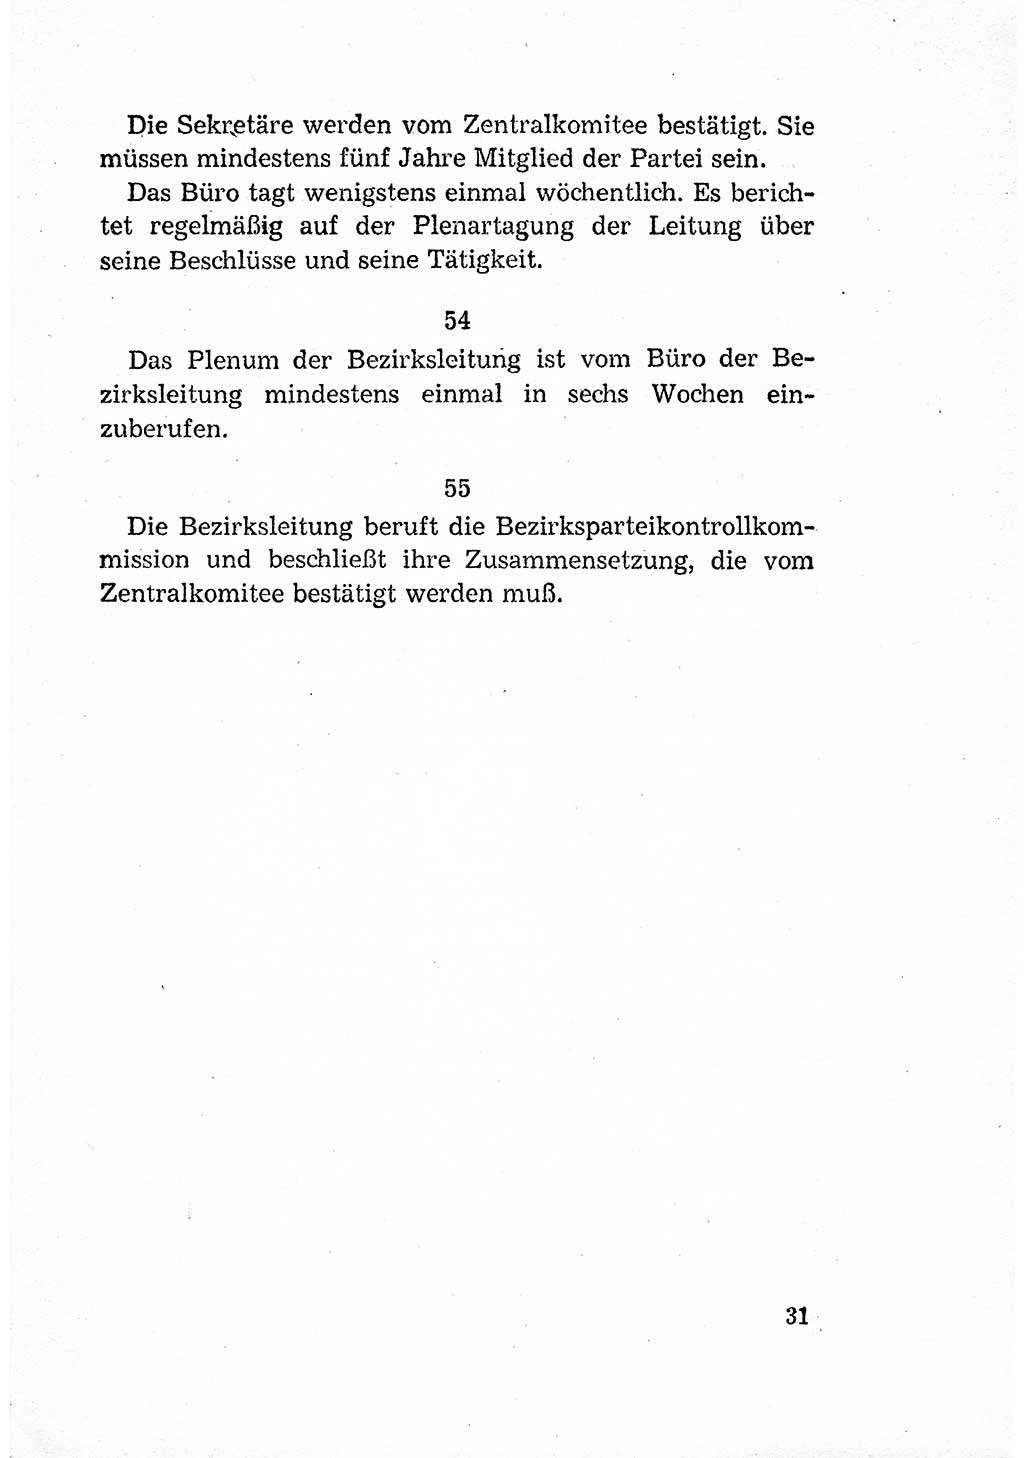 Statut der Sozialistischen Einheitspartei Deutschlands (SED) [Deutsche Demokratische Republik (DDR)] 1958, Seite 31 (St. SED DDR 1958, S. 31)